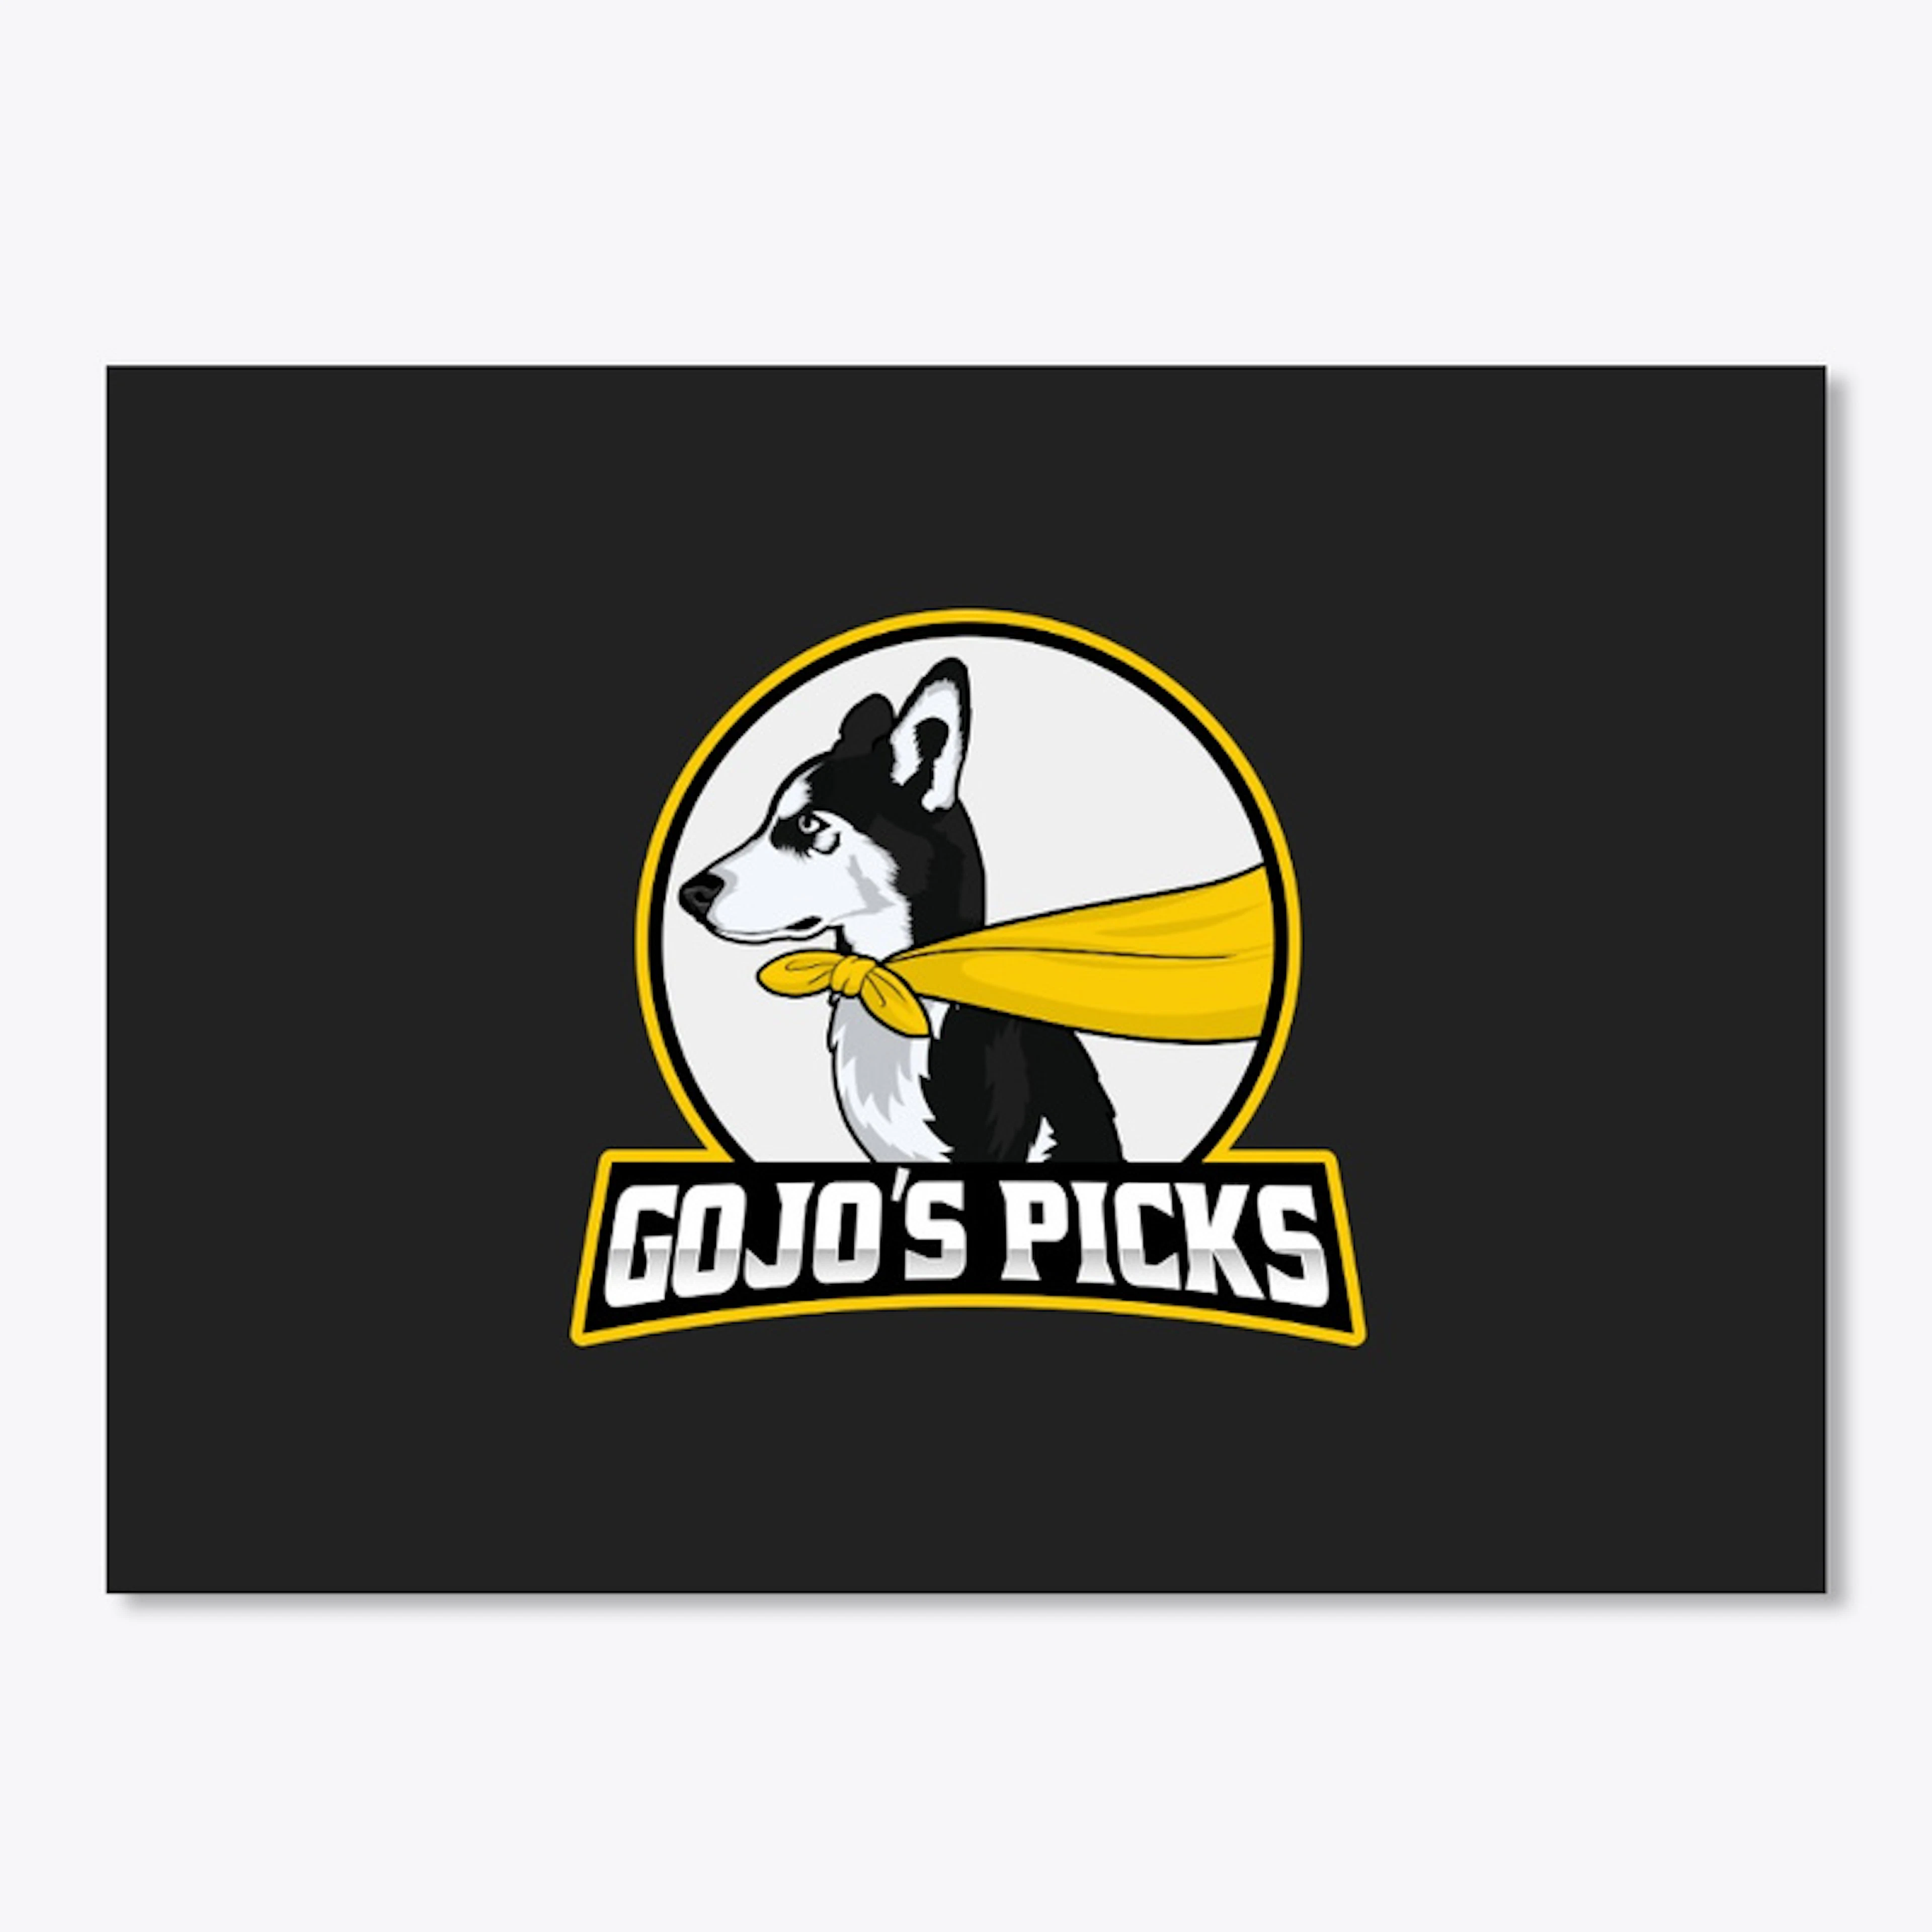 GoJo's Picks